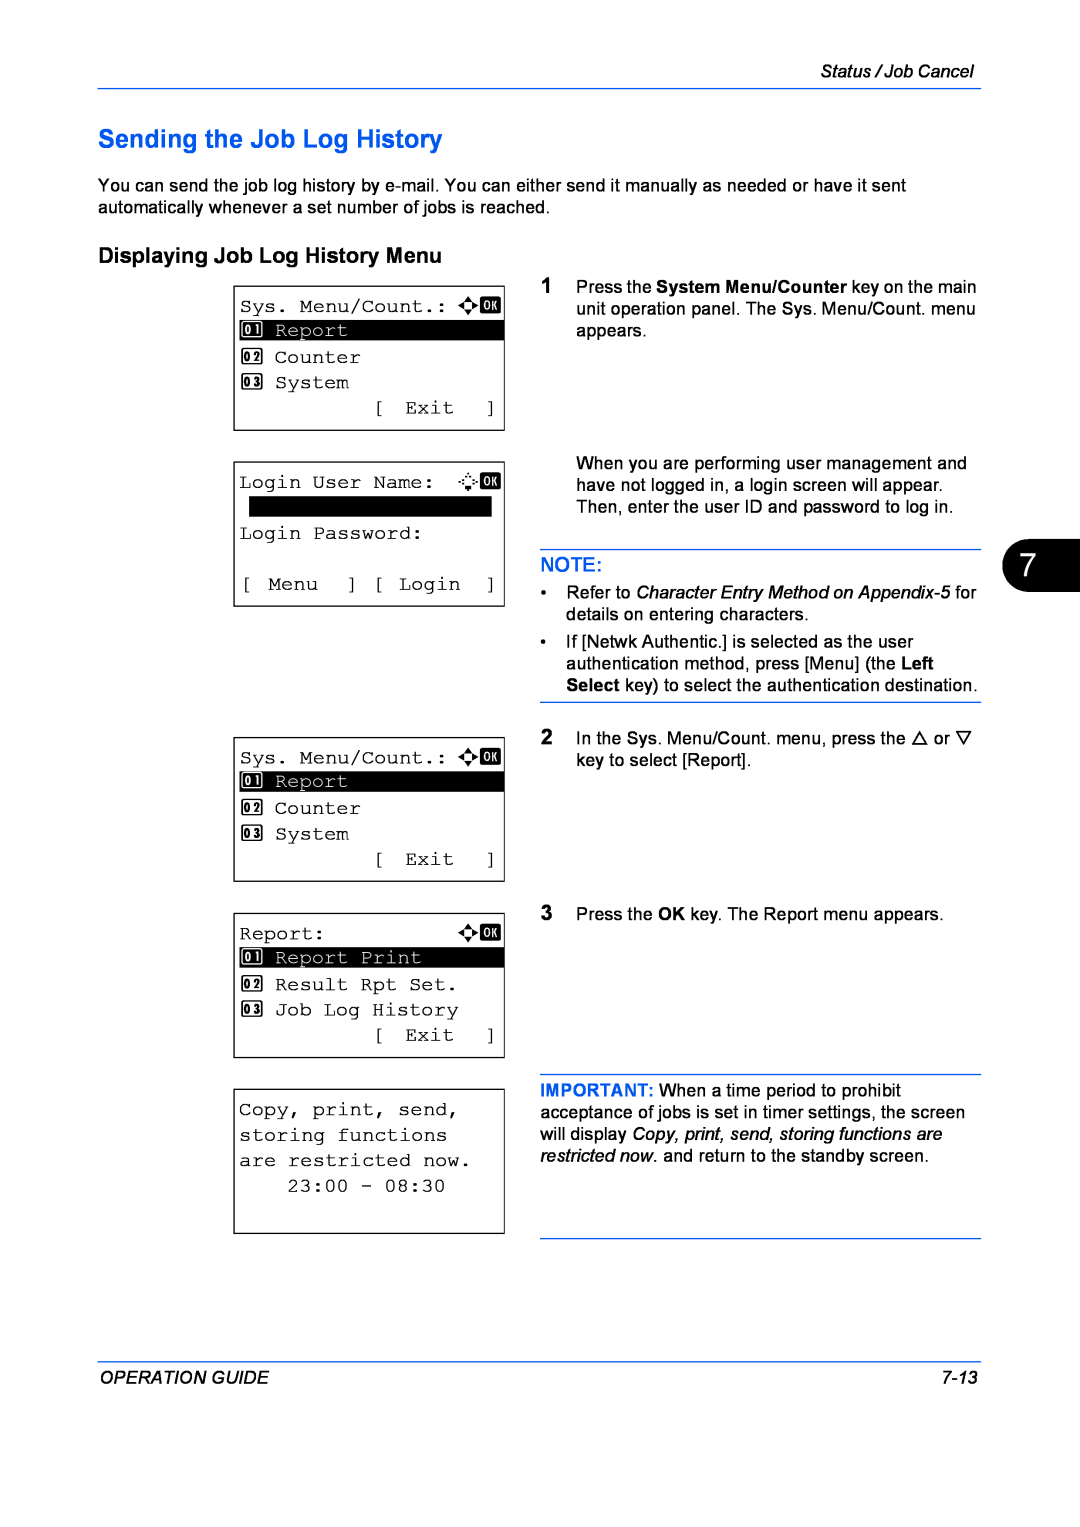 Kyocera FS-1128MFP, FS-1028MFP manual Sending the Job Log History, Displaying Job Log History Menu, NOTE7 